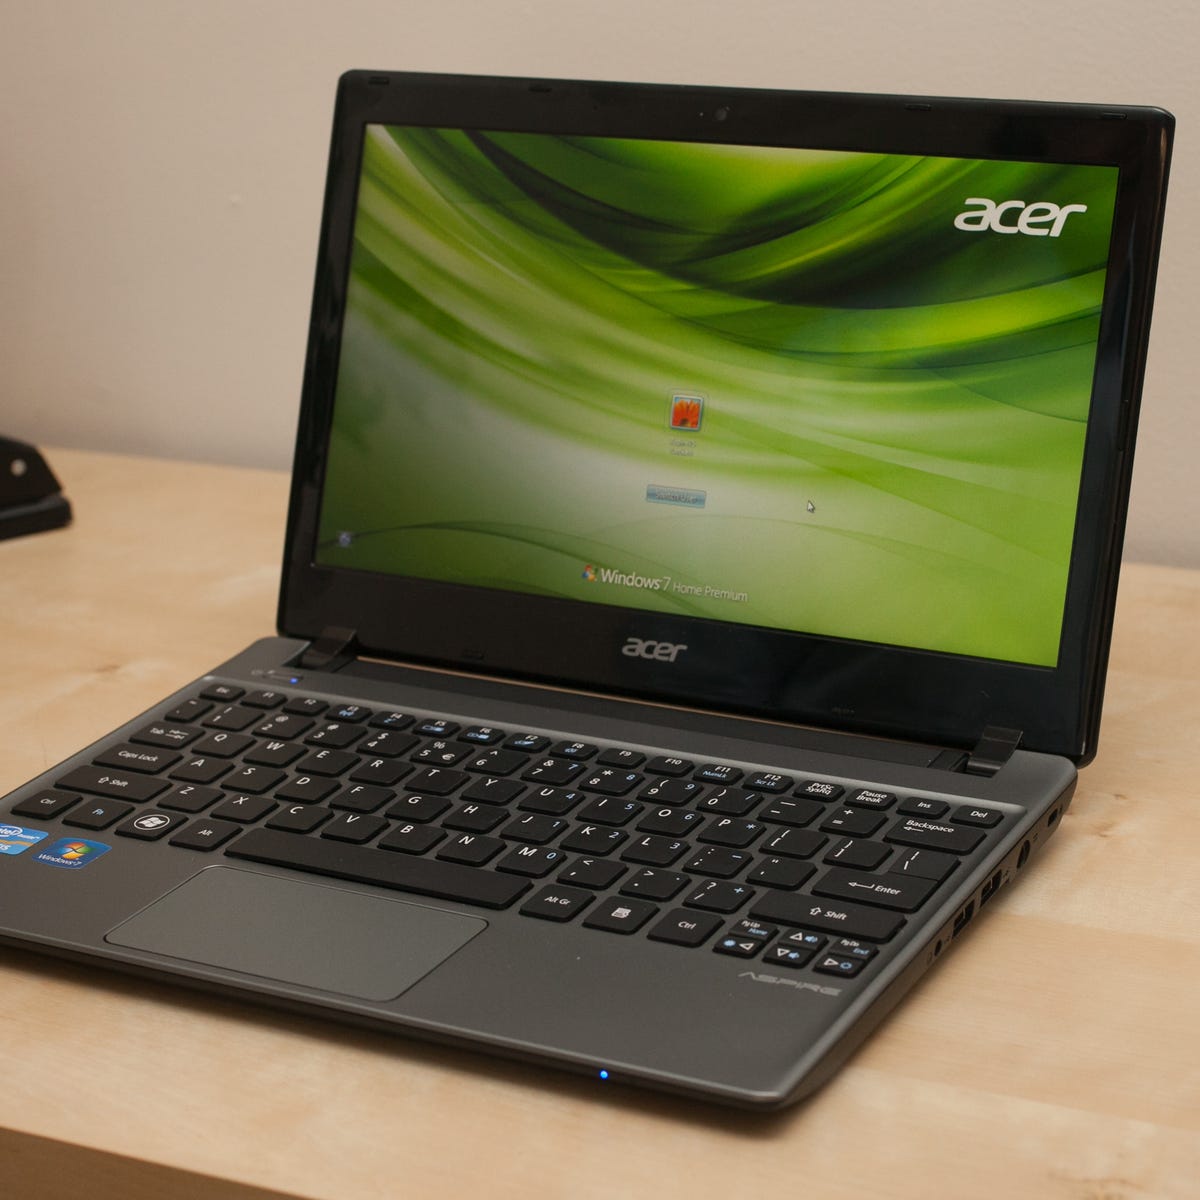 Tjen At hoppe underkjole Acer V5-171 review